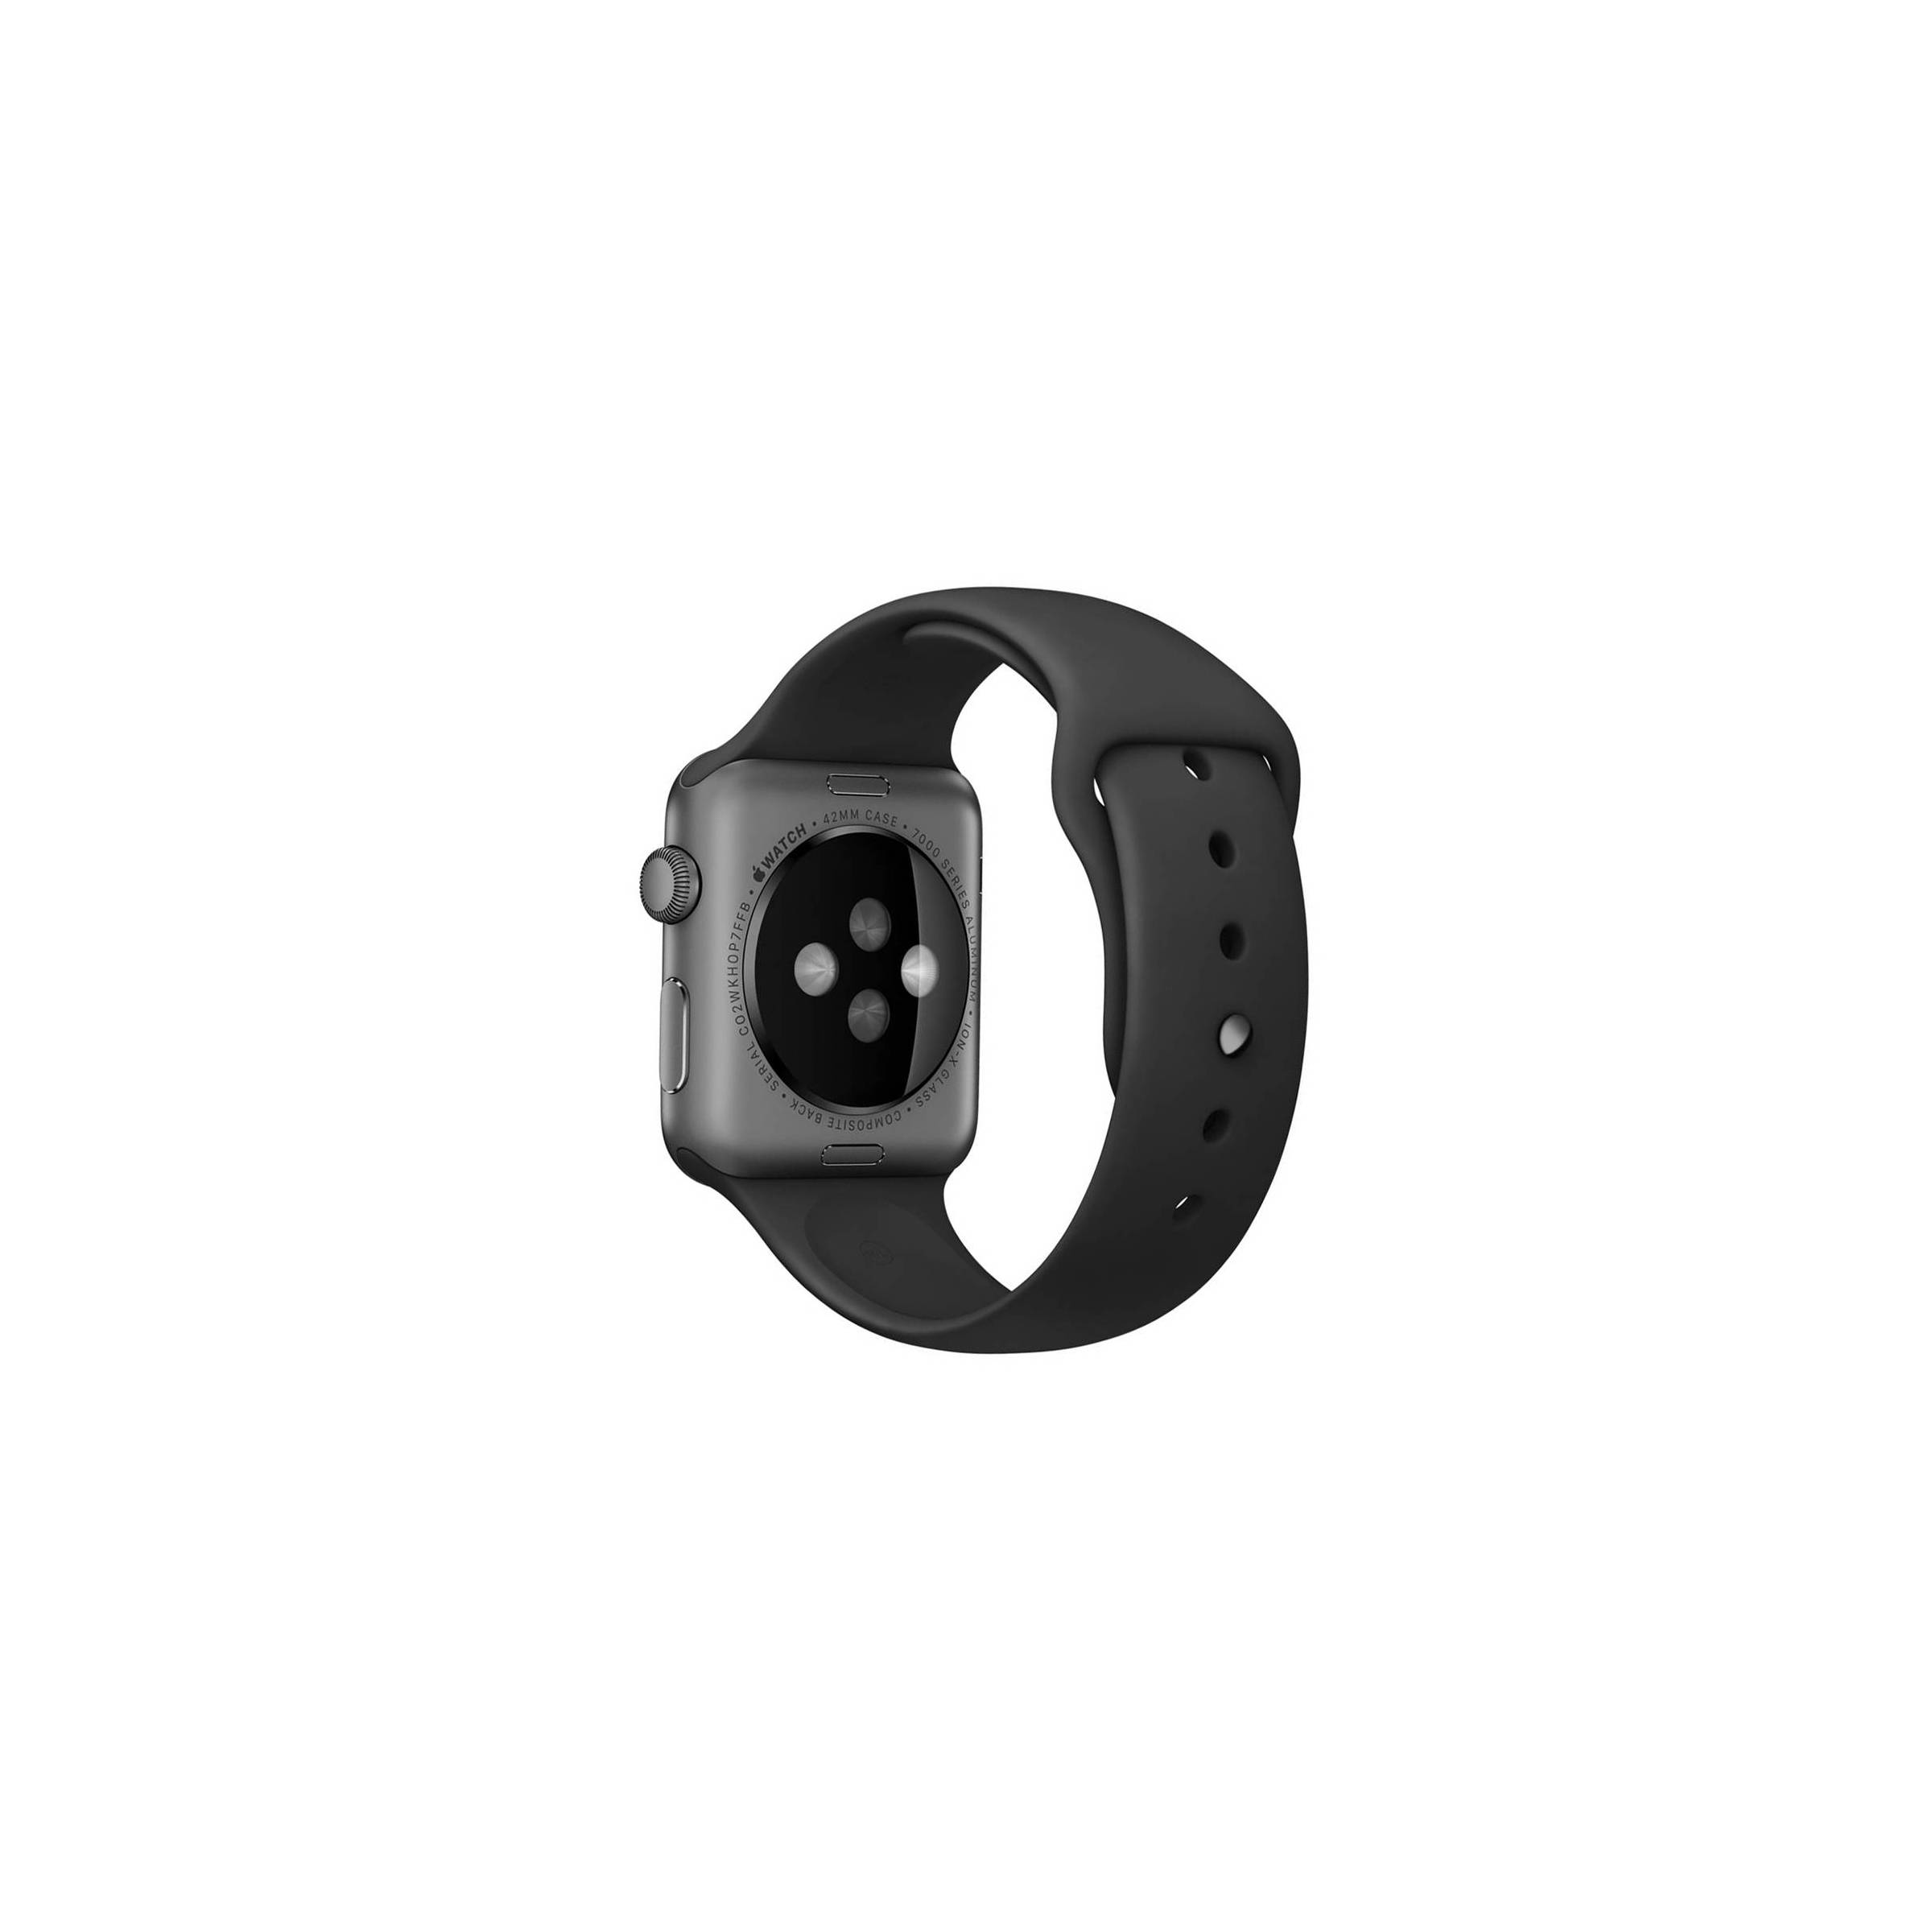 Bilde av Apple Watch Silikon Stropp- Flere Vakre Farger, Størrelse 38mm, Farge Sort